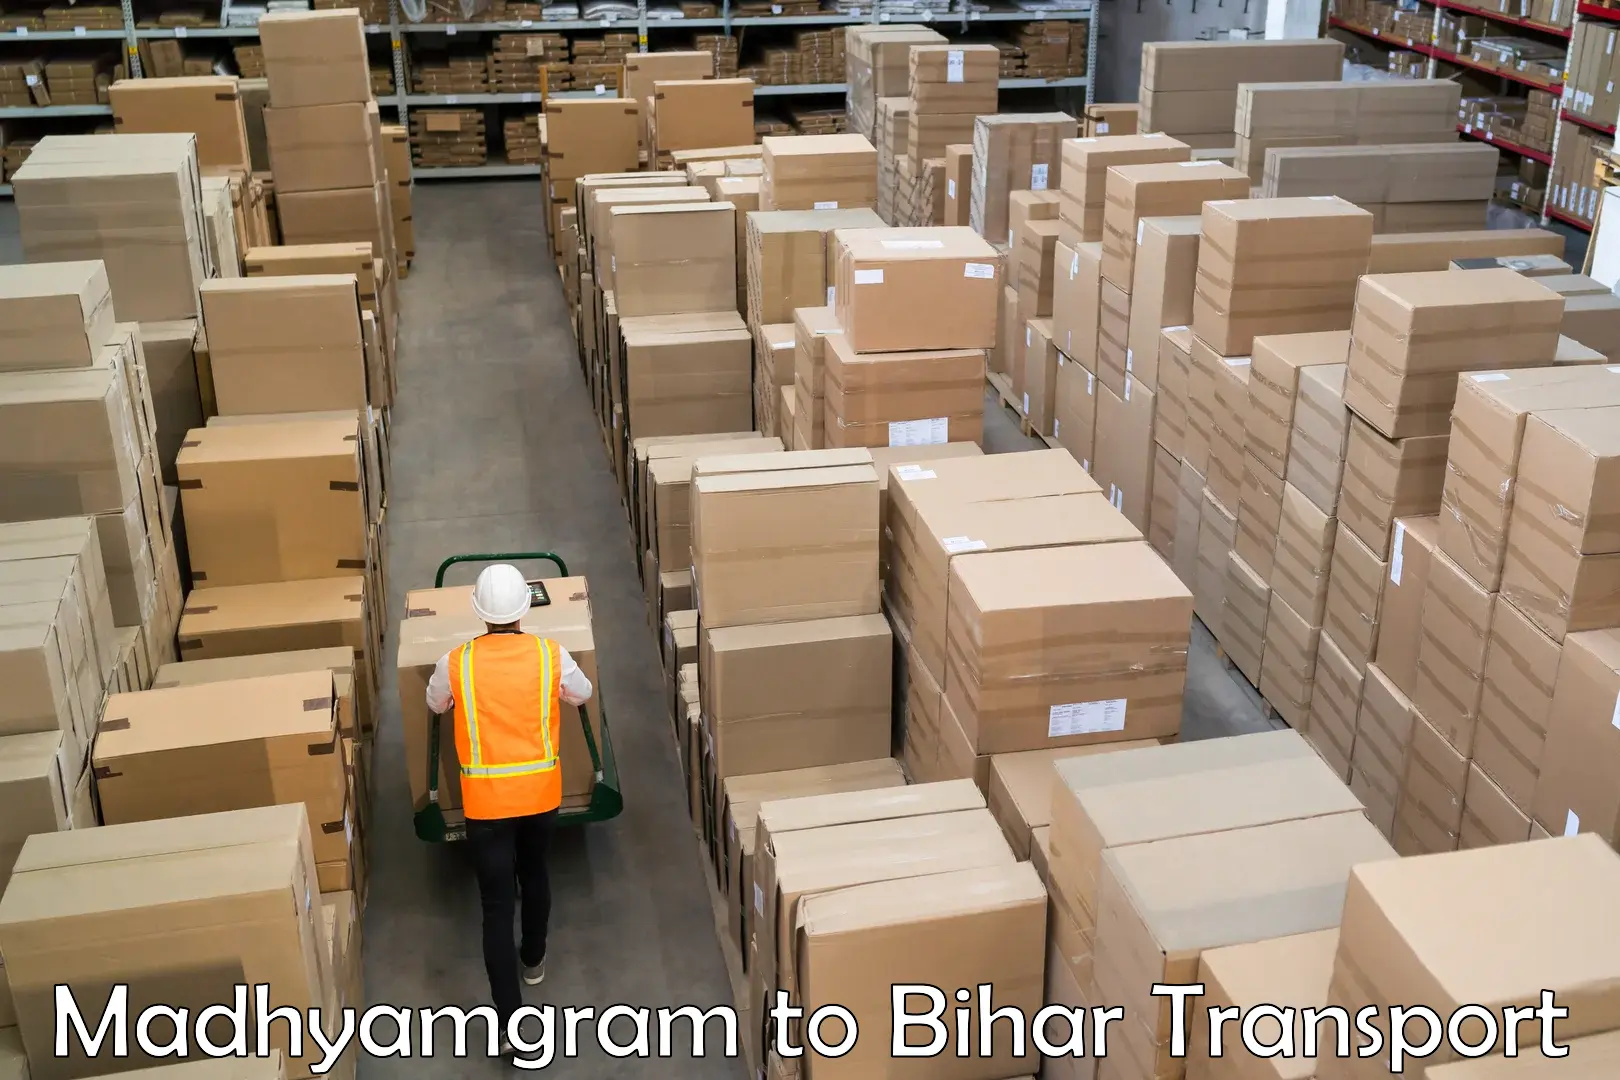 Shipping partner Madhyamgram to Bihar